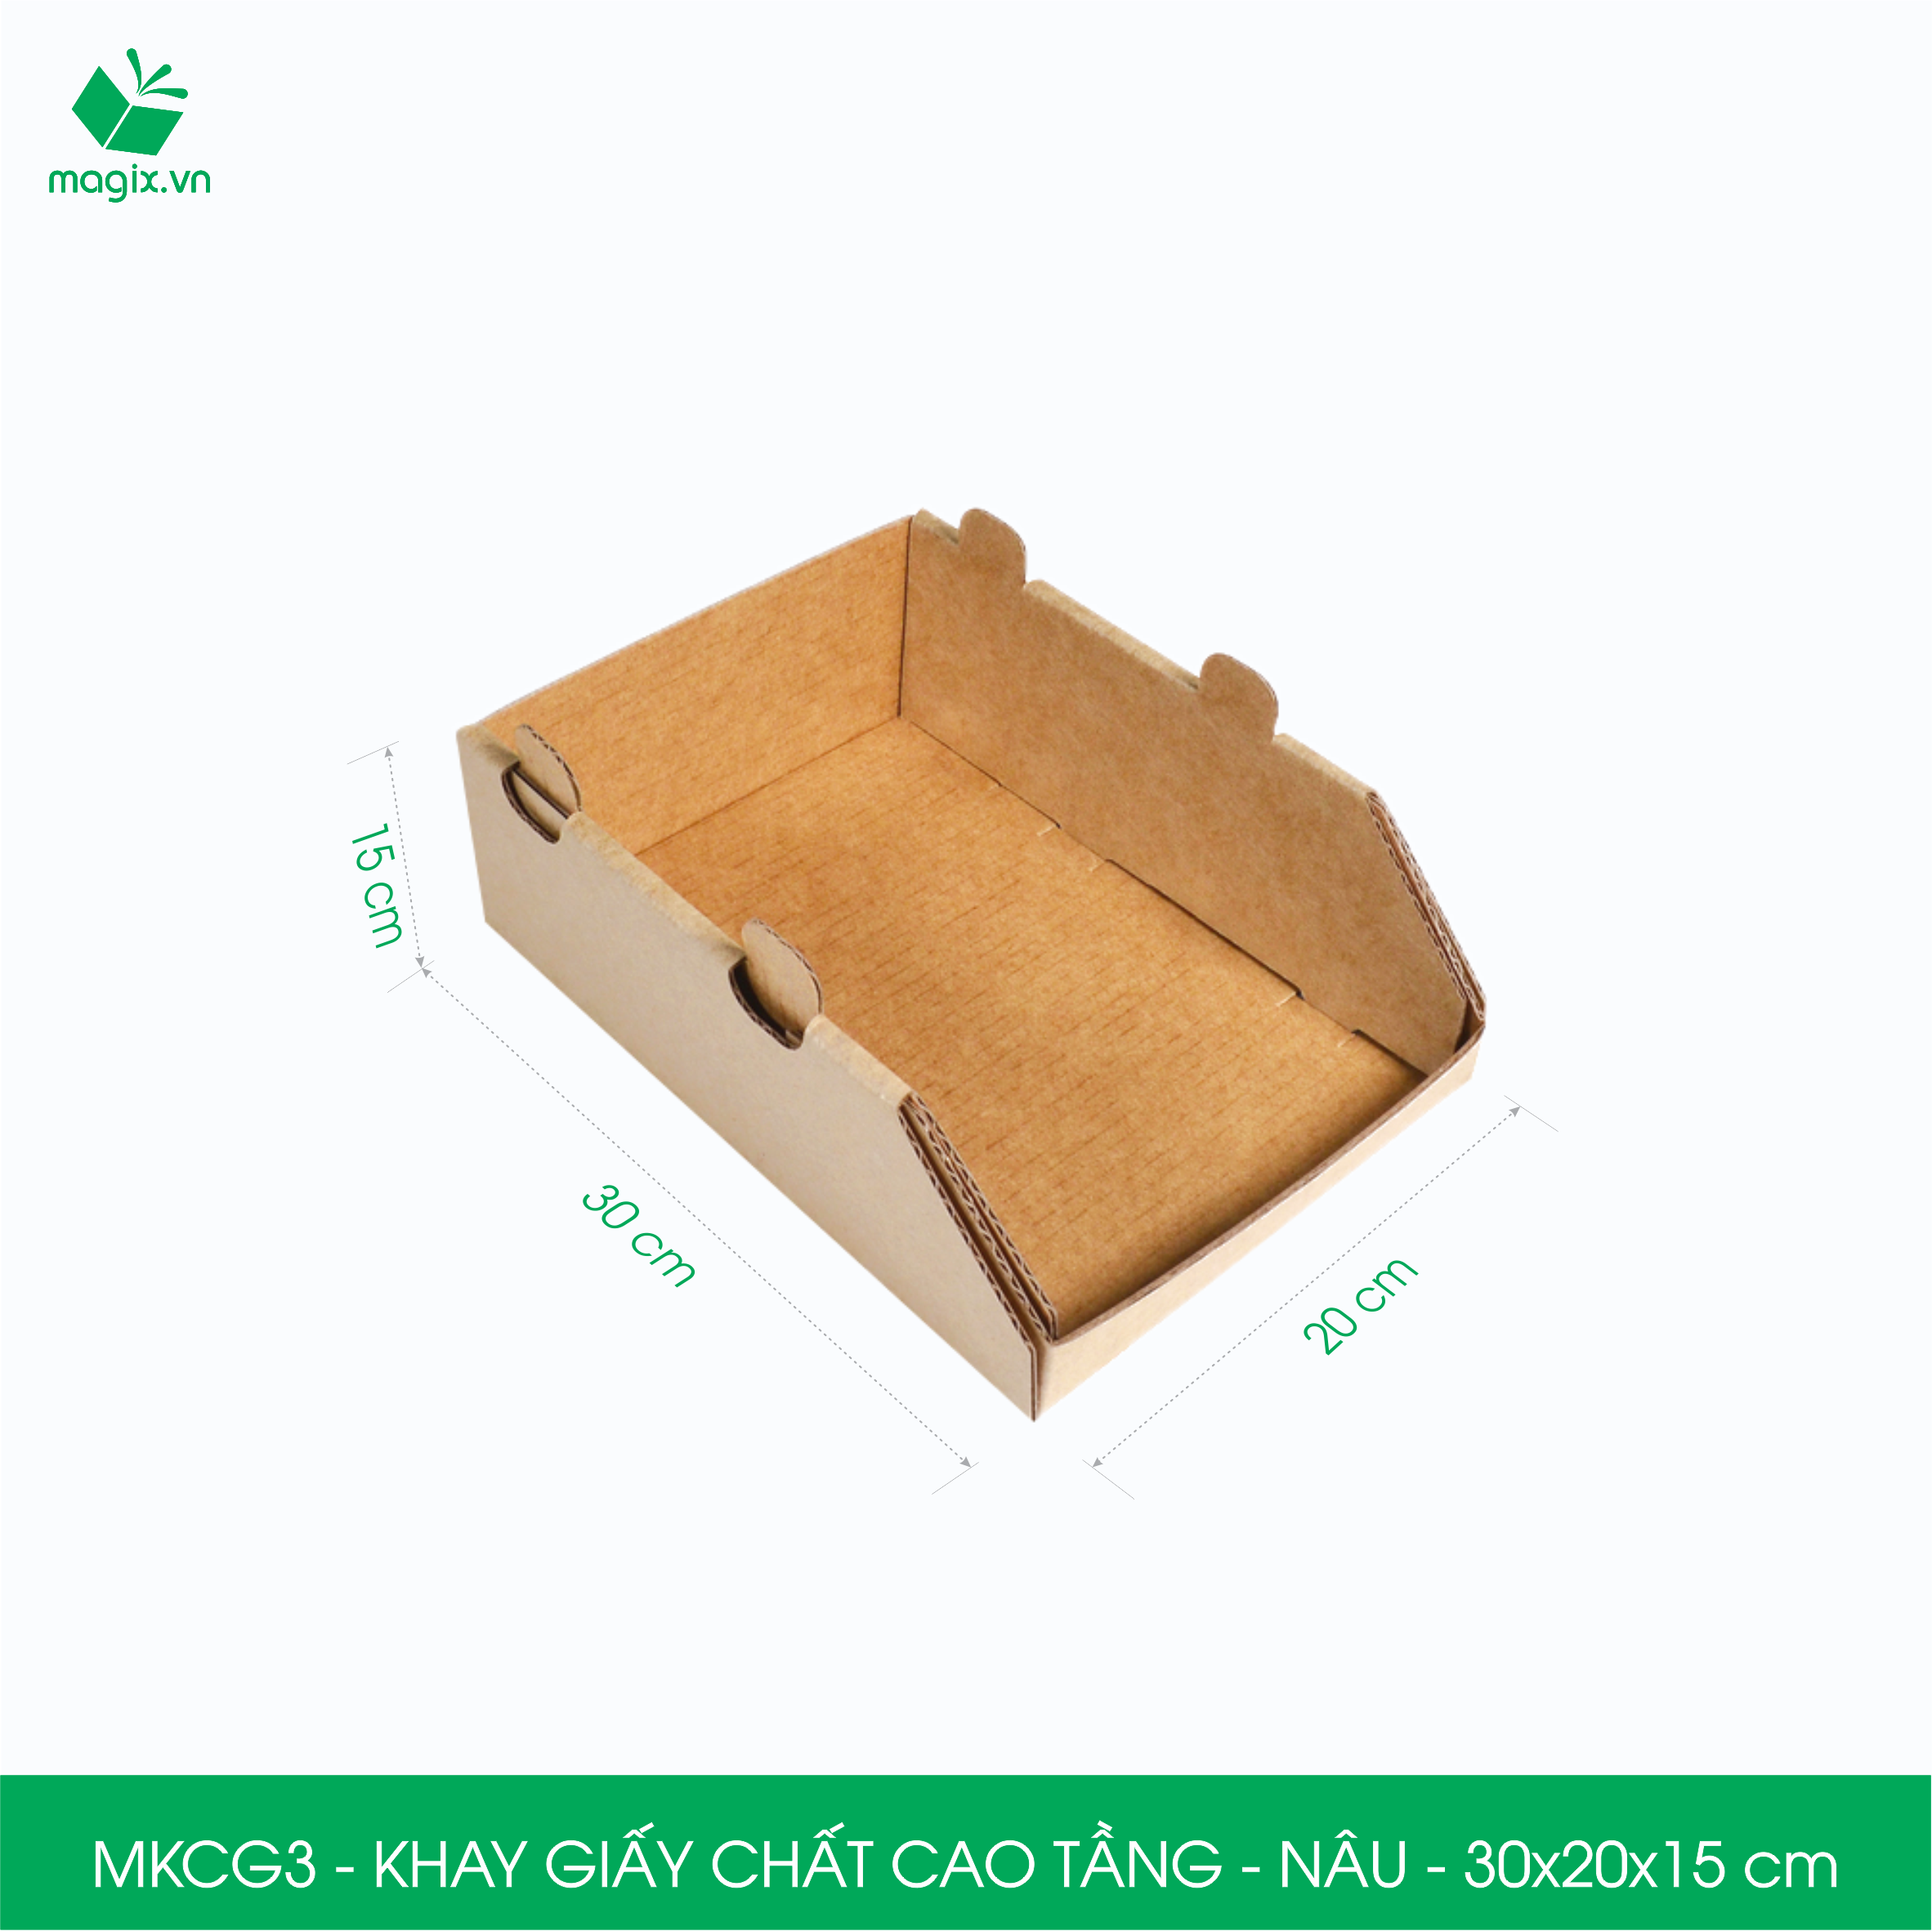 MKCG3 - 30x20x15 cm - 10 Khay giấy chất cao tầng bằng giấy carton siêu cứng, kệ giấy đựng đồ văn phòng, khay đựng dụng cụ, khay linh kiện, kệ phân loại dụng cụ